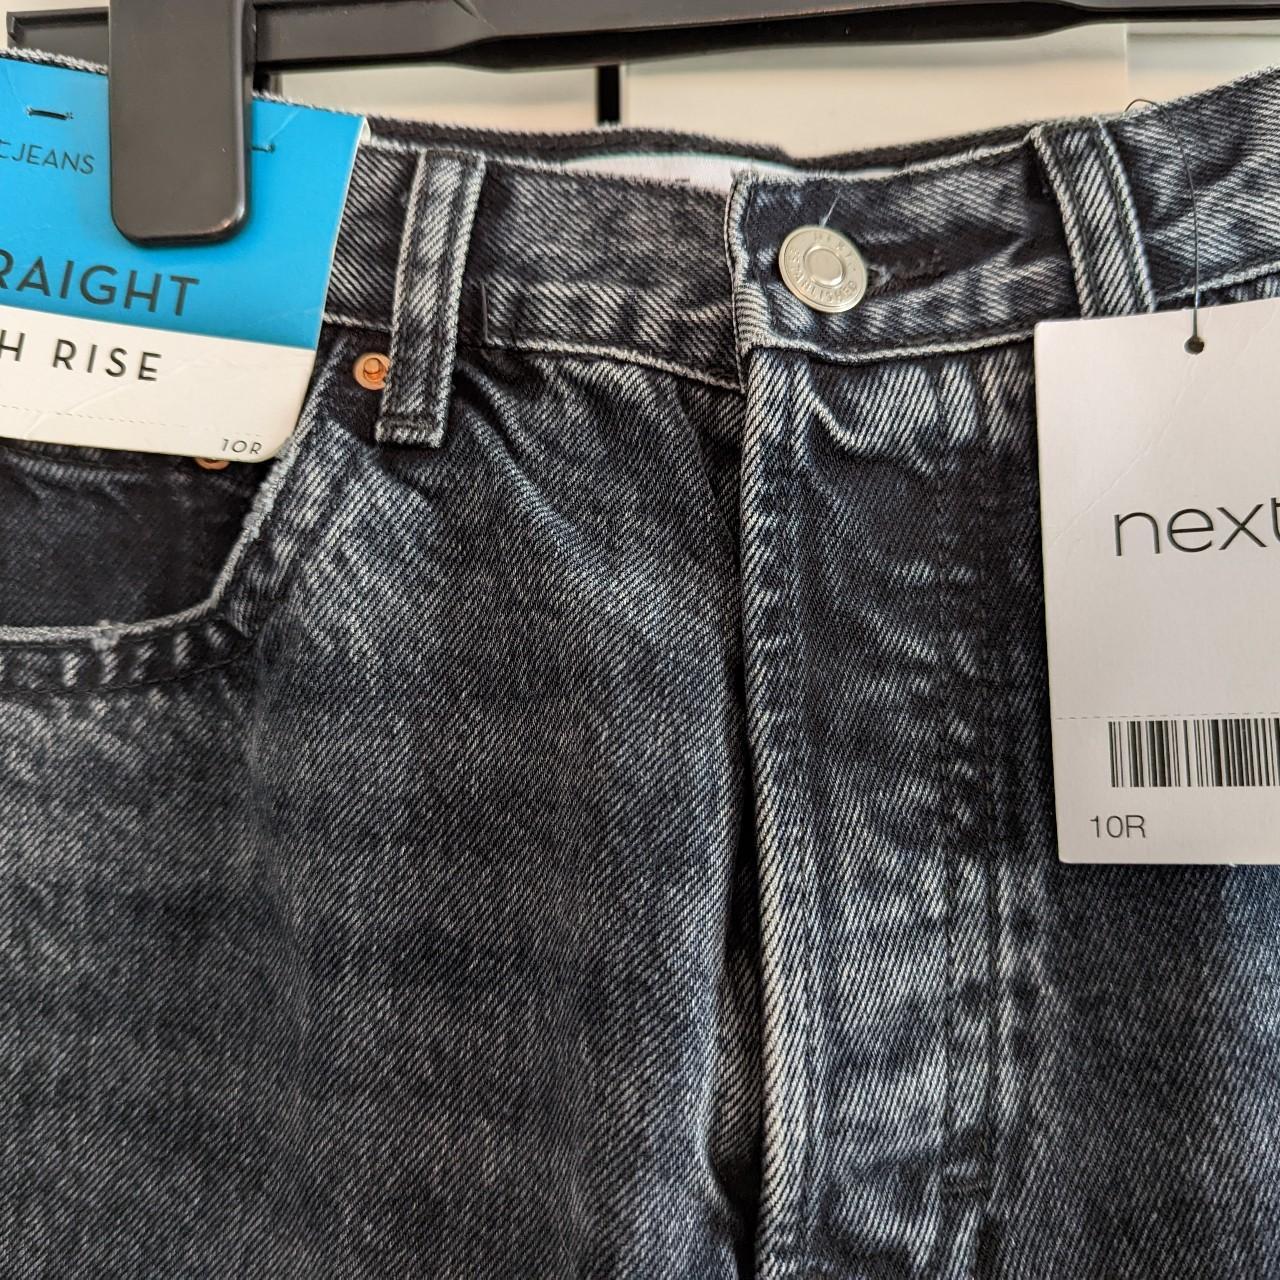 Next jeans size 10 high rise, straight cut, regular... - Depop